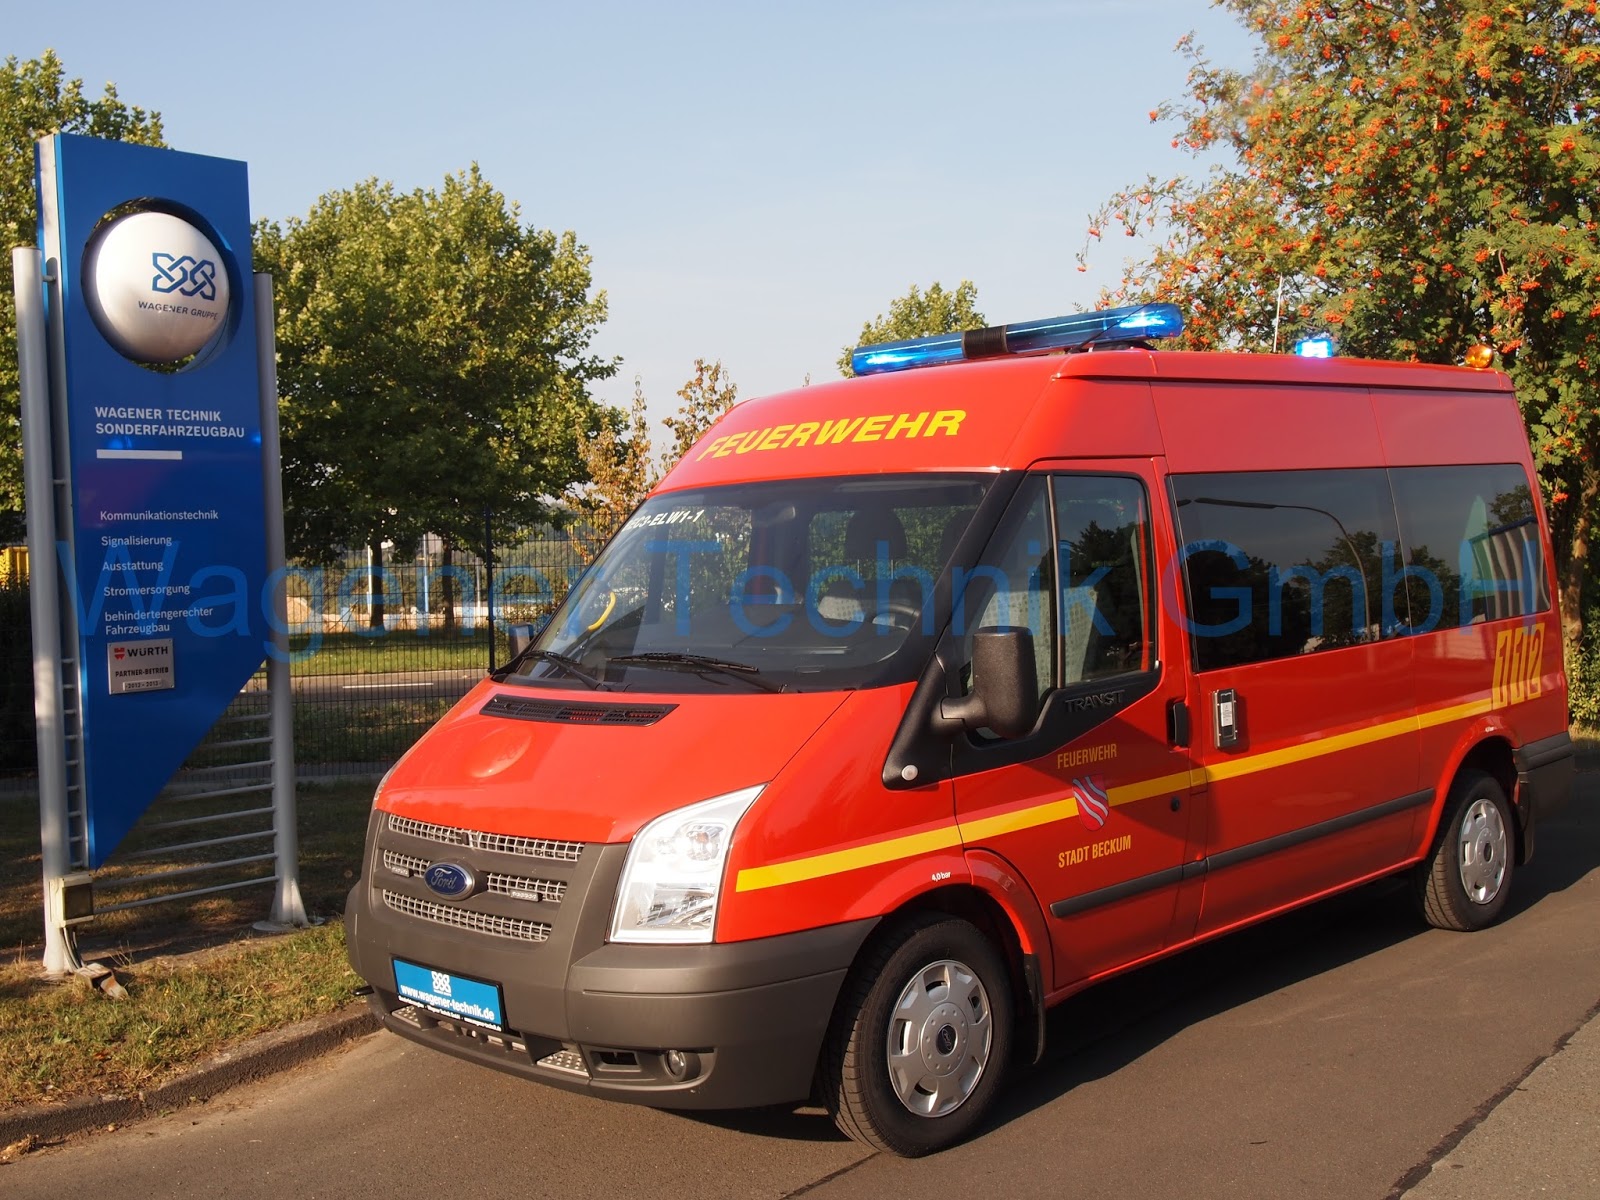 Wagener Technik Sonderfahrzeugbau: Übergabe: ELW Feuerwehr Beckum